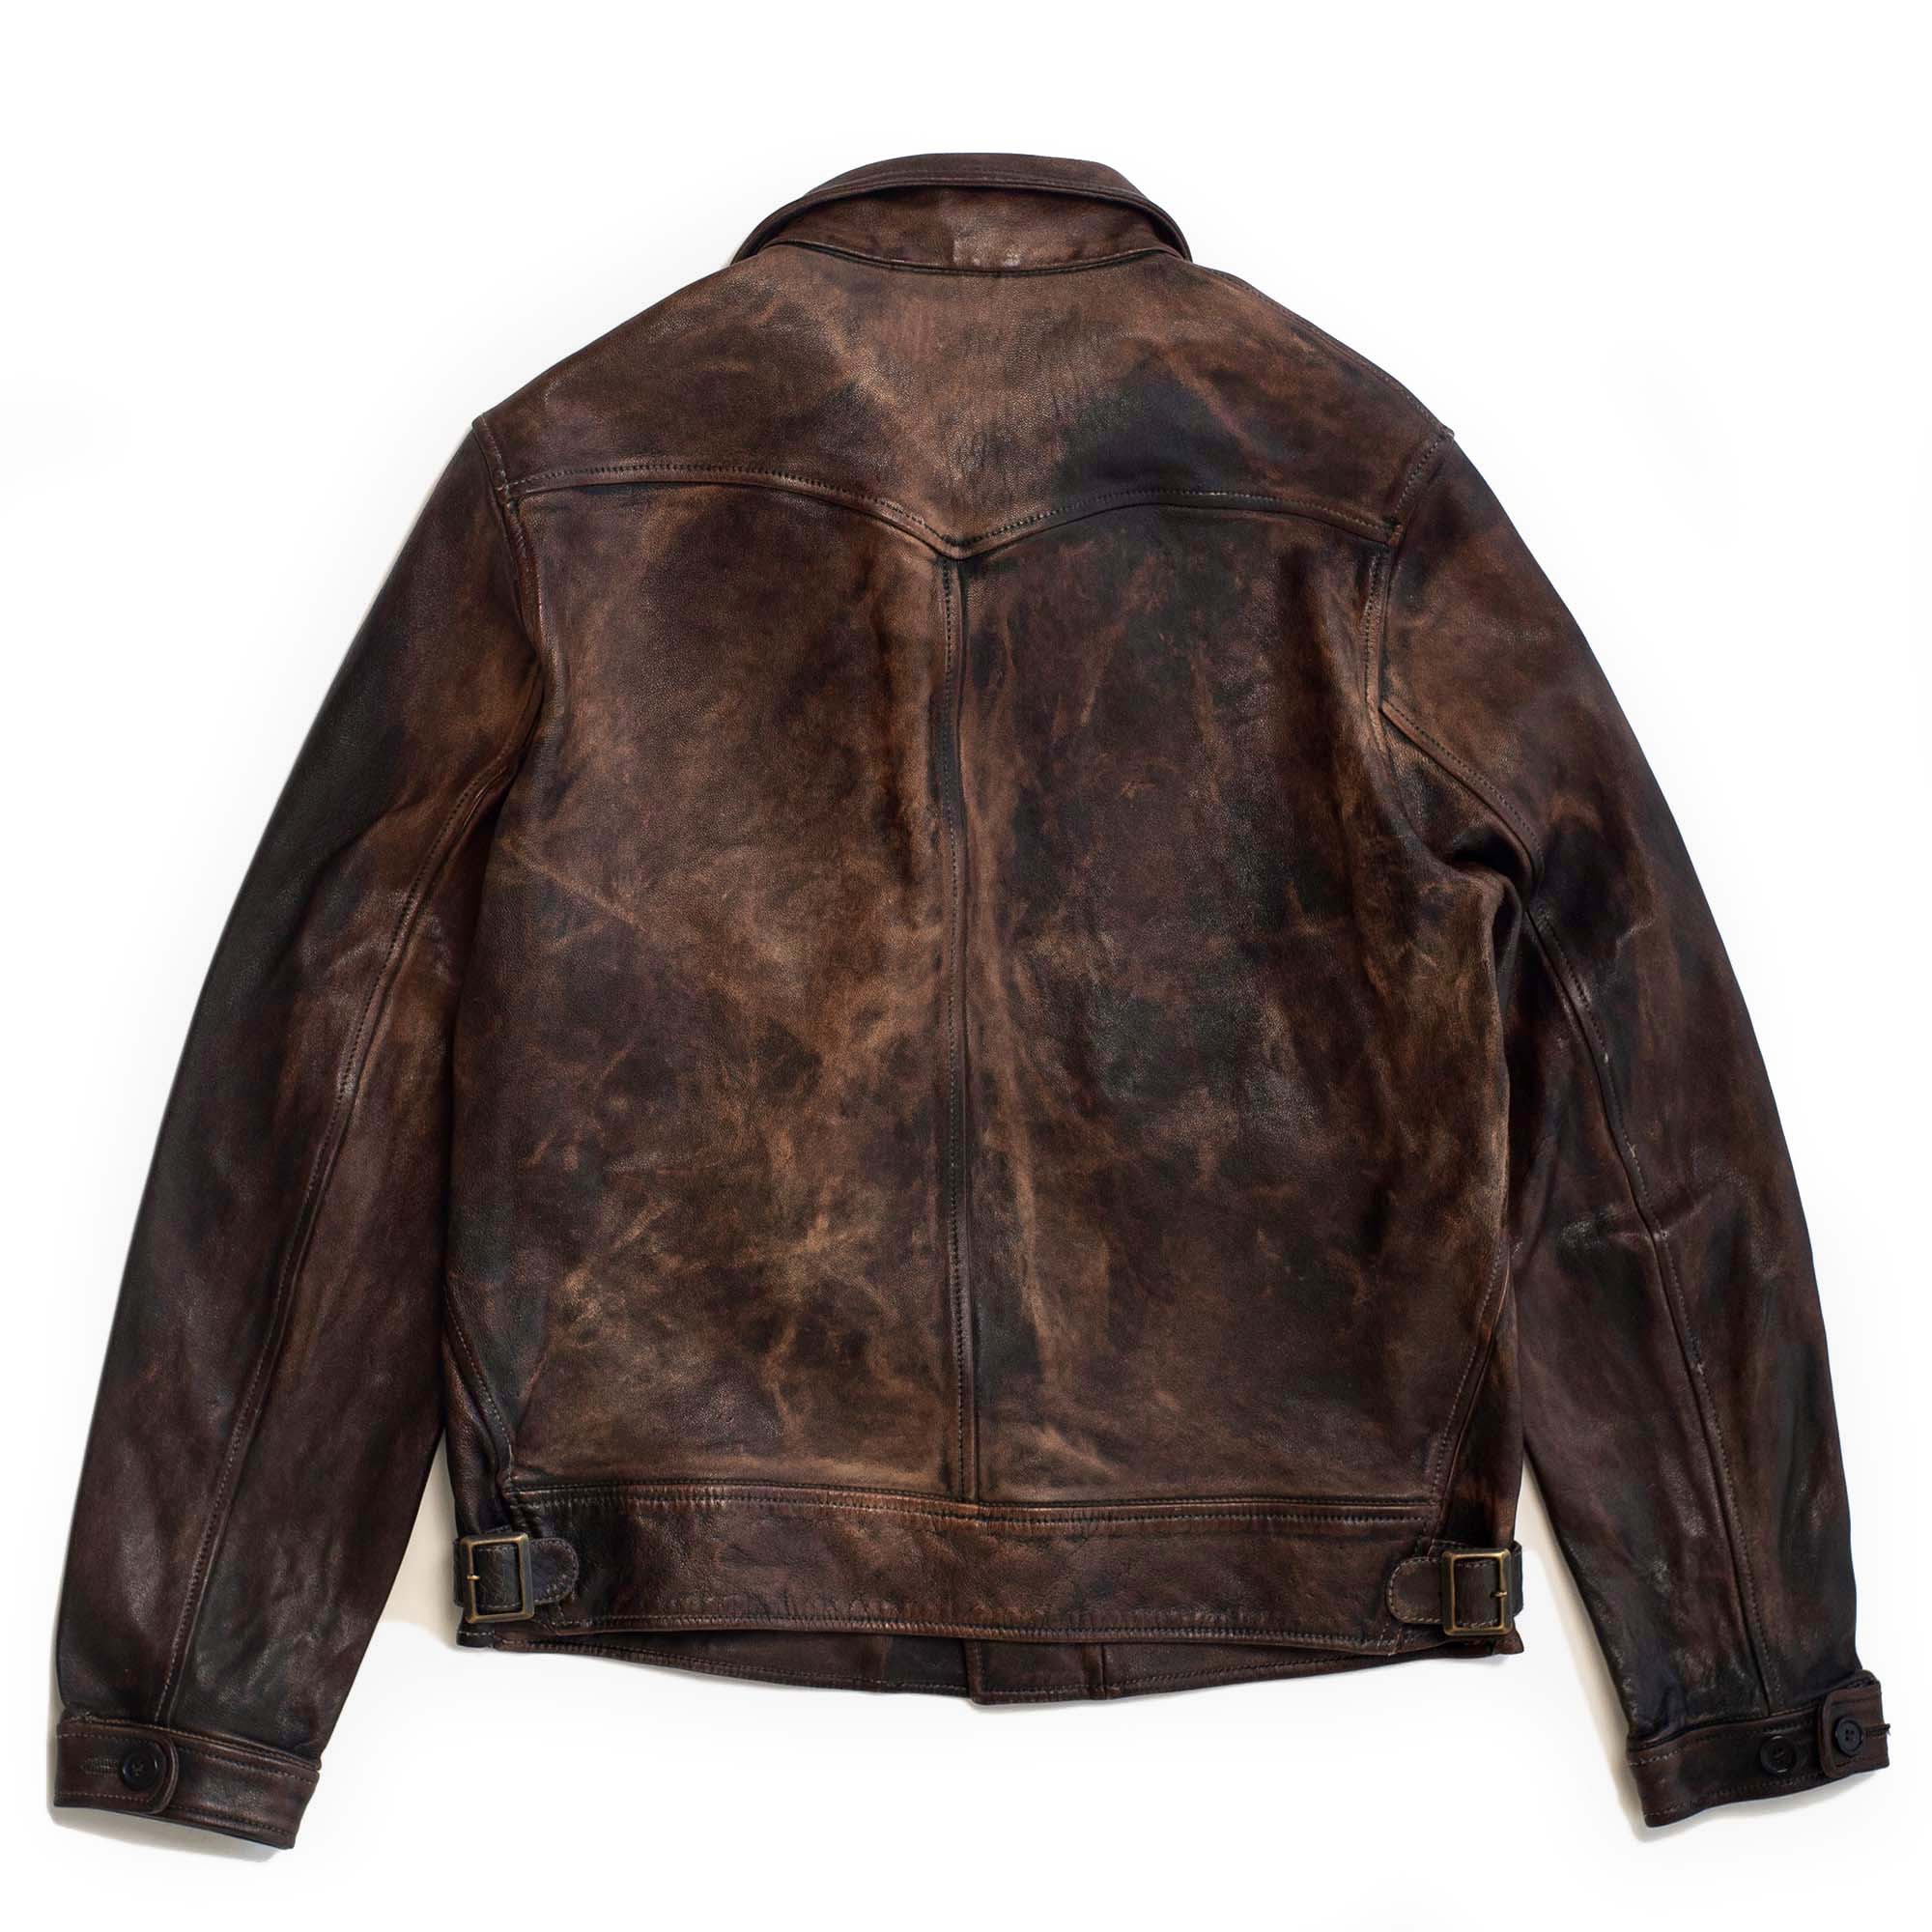 "Cossack" Bruciato Leather Jacket